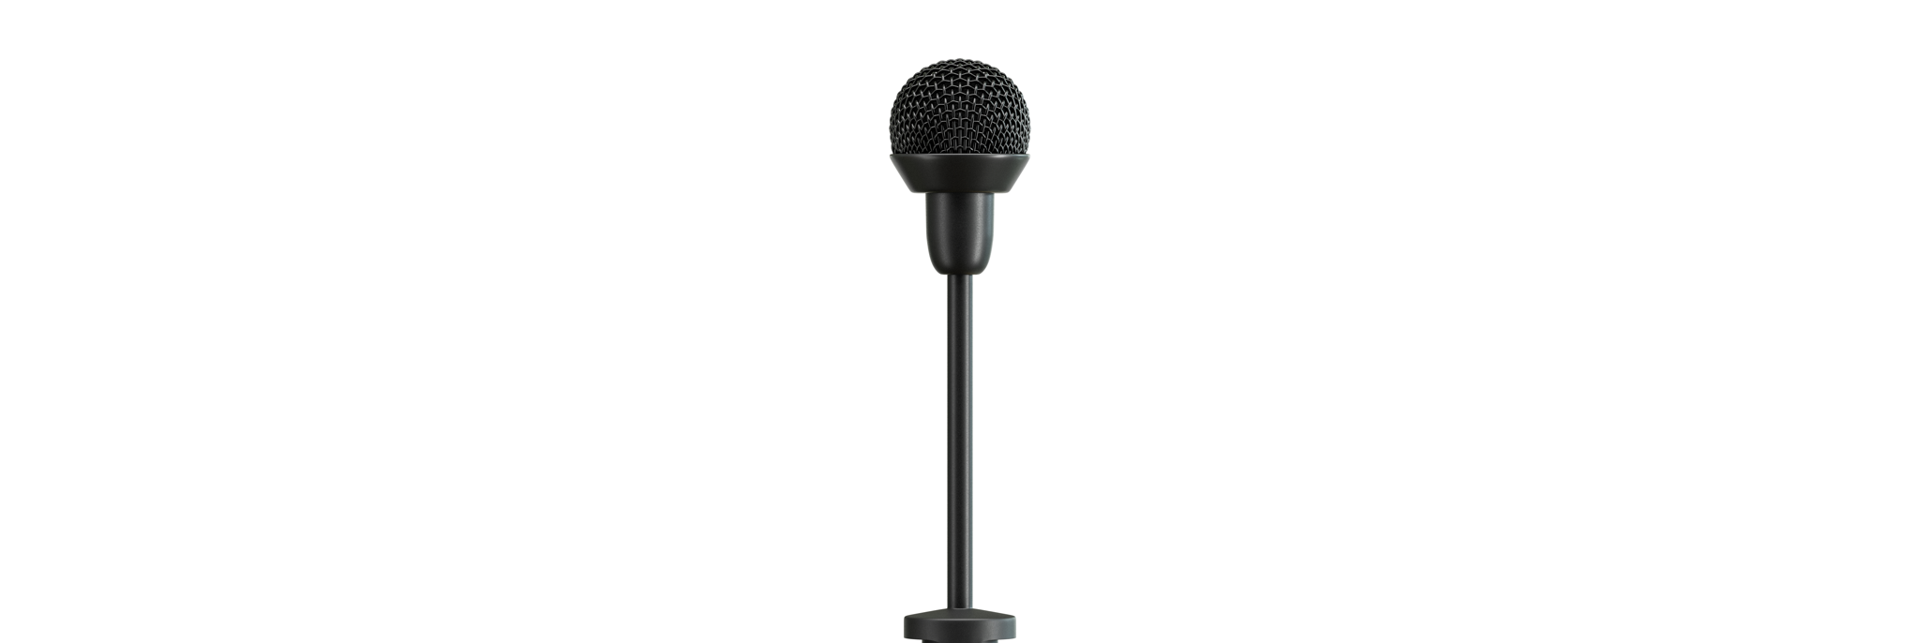 Sennheiser introducerer ny mikrofon til oplægsholdere